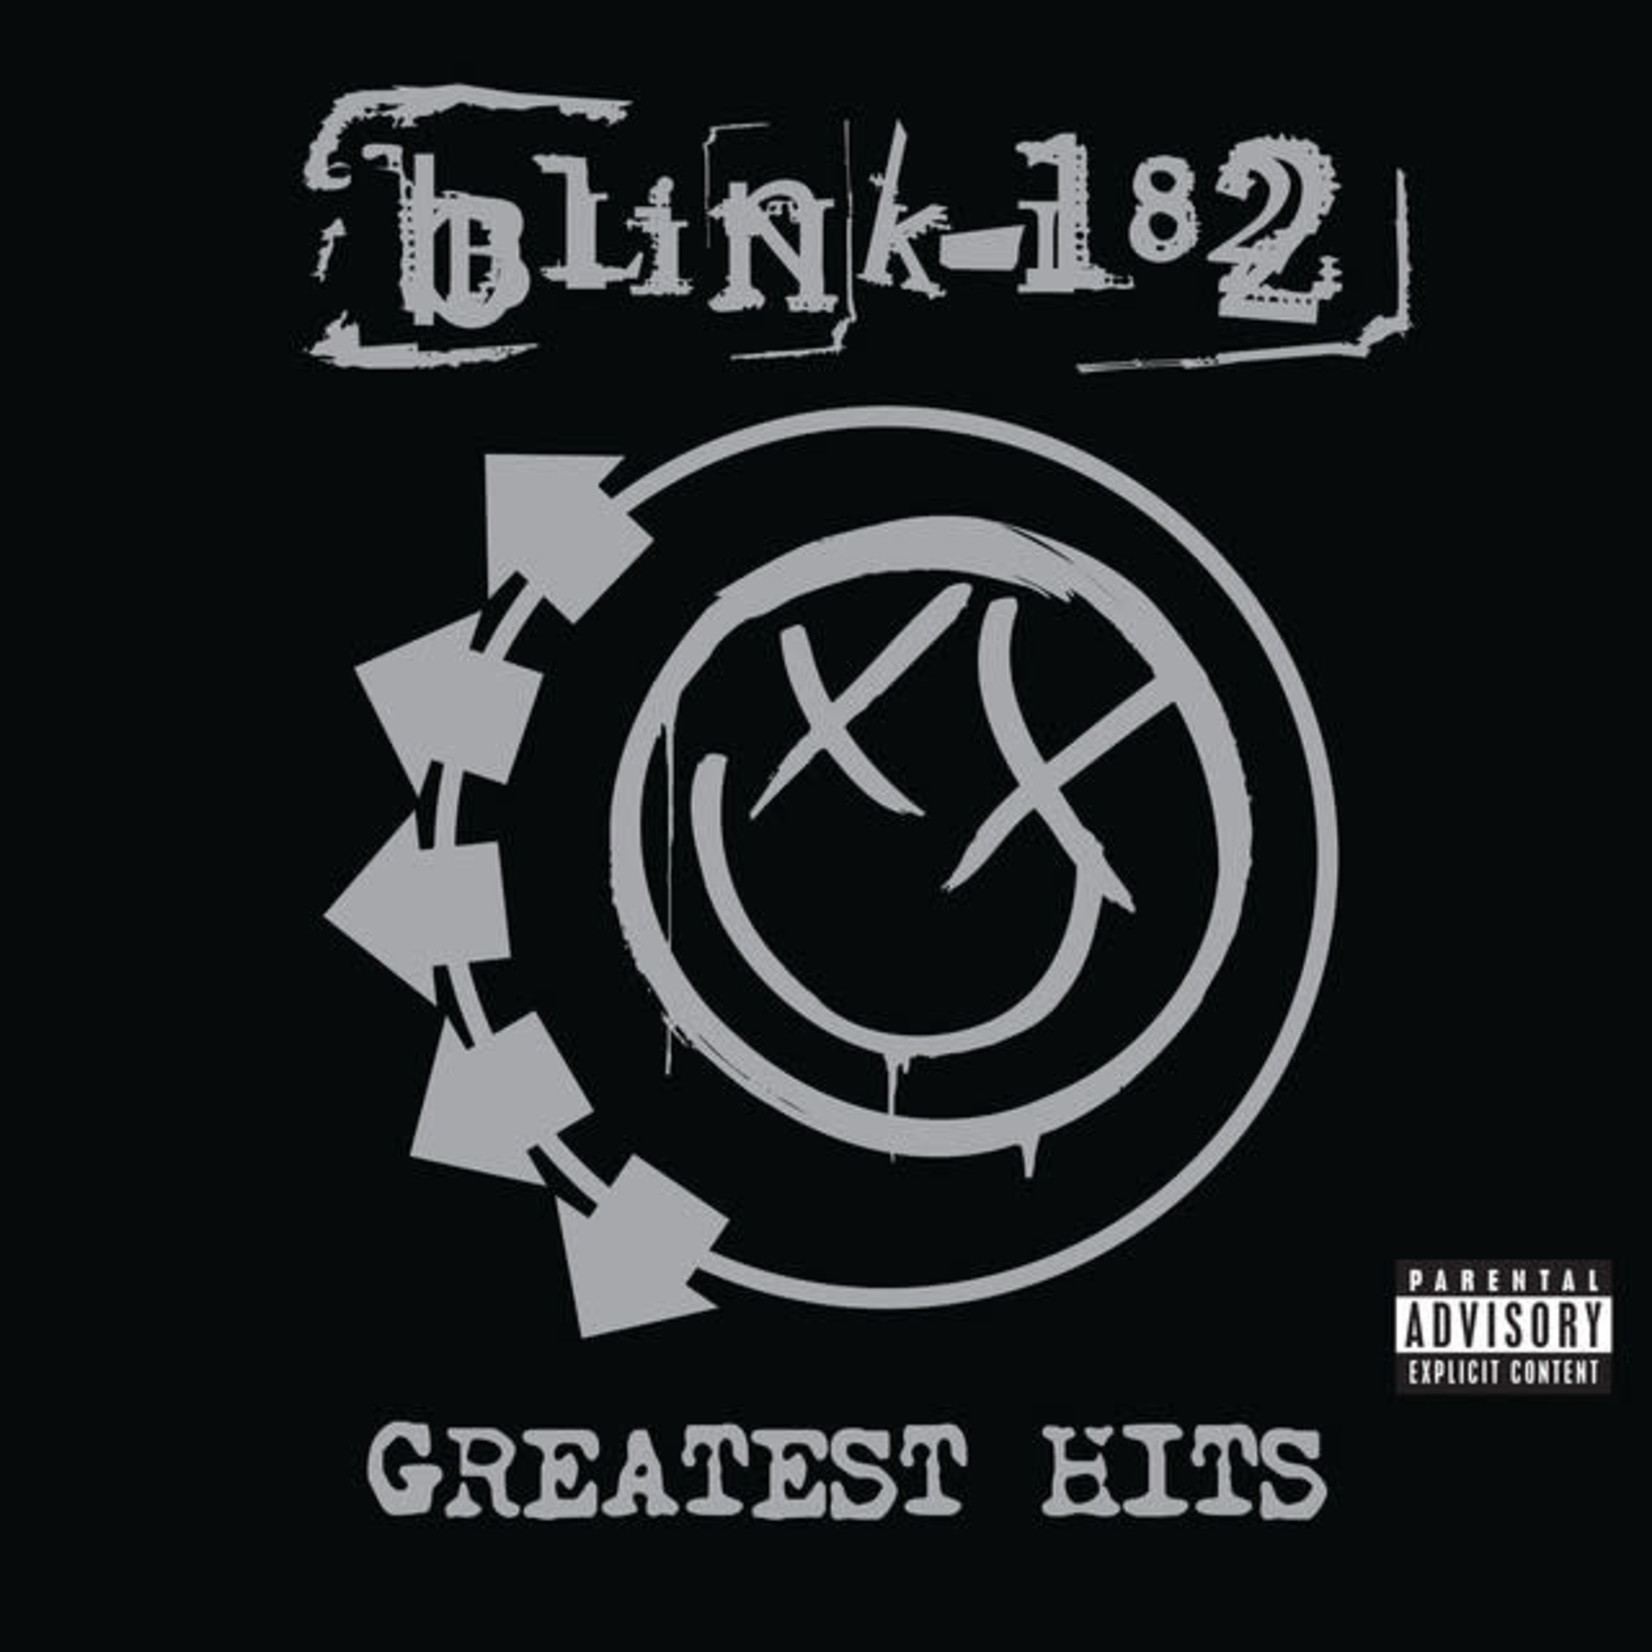 Vinyl Blink 182 - Greatest Hits